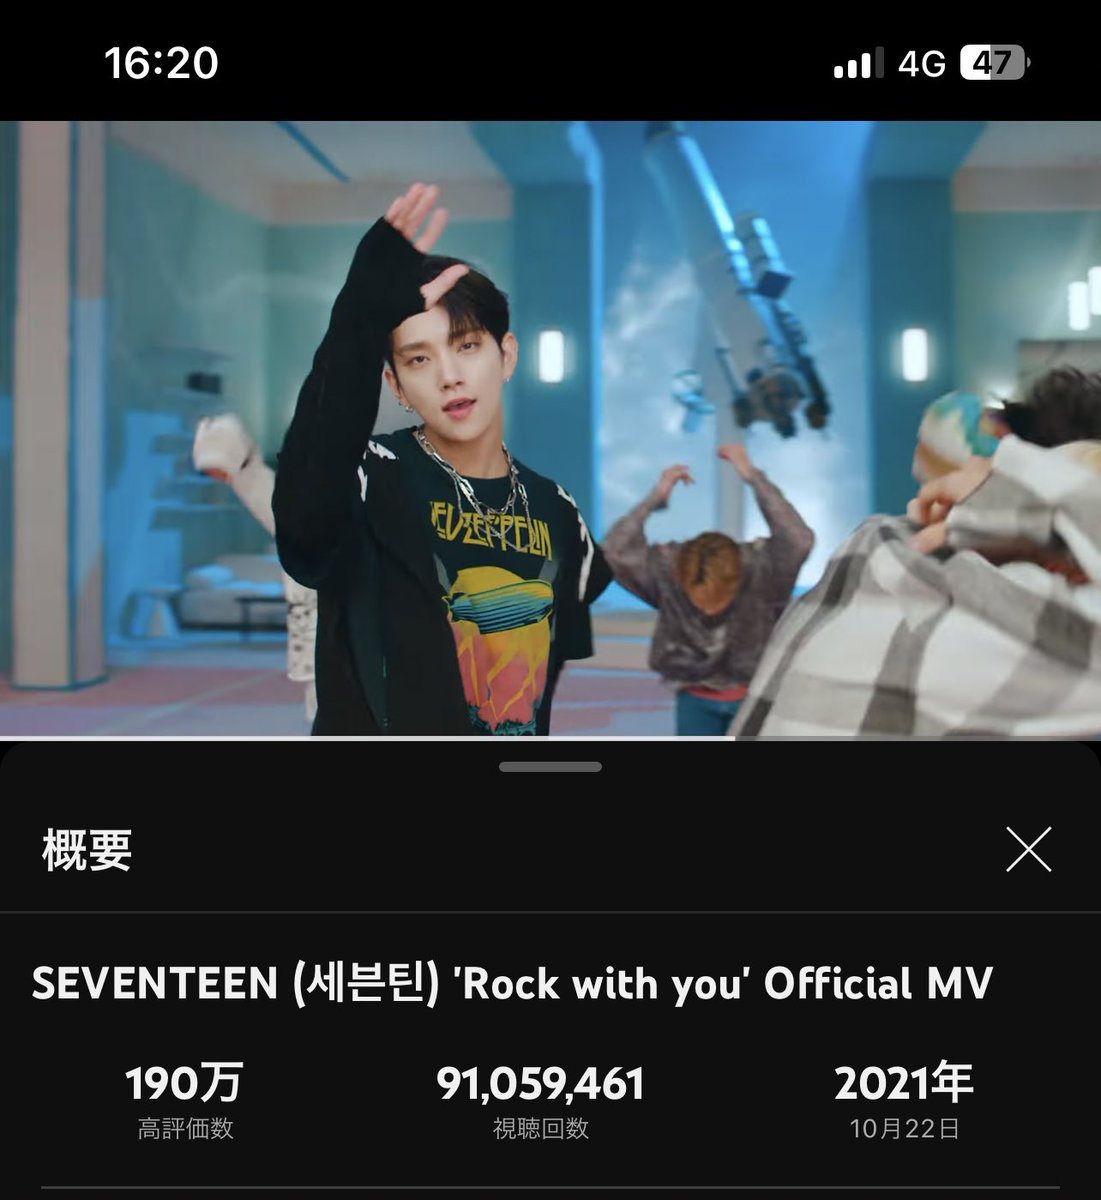 ❤️‍🔥🎸🎶4/19②
#SVT_Rockwithyou 
#SEVENTEEN